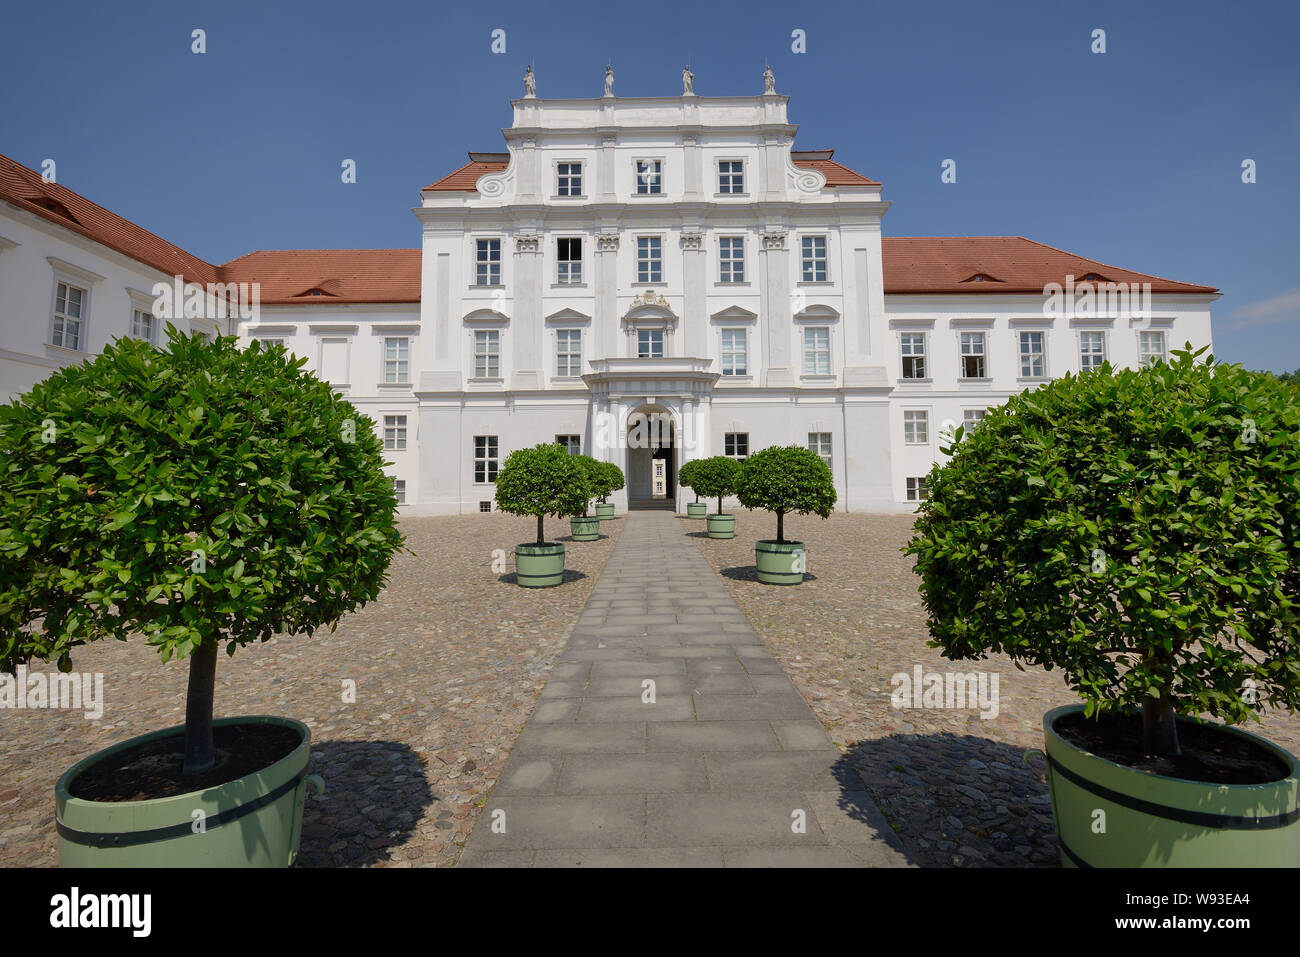 Schloss Oranienburg Palace, ältesten barocken Palast in der Mark Brandenburg, Oranienburg, Brandenburg, Deutschland, Europa Stockfoto